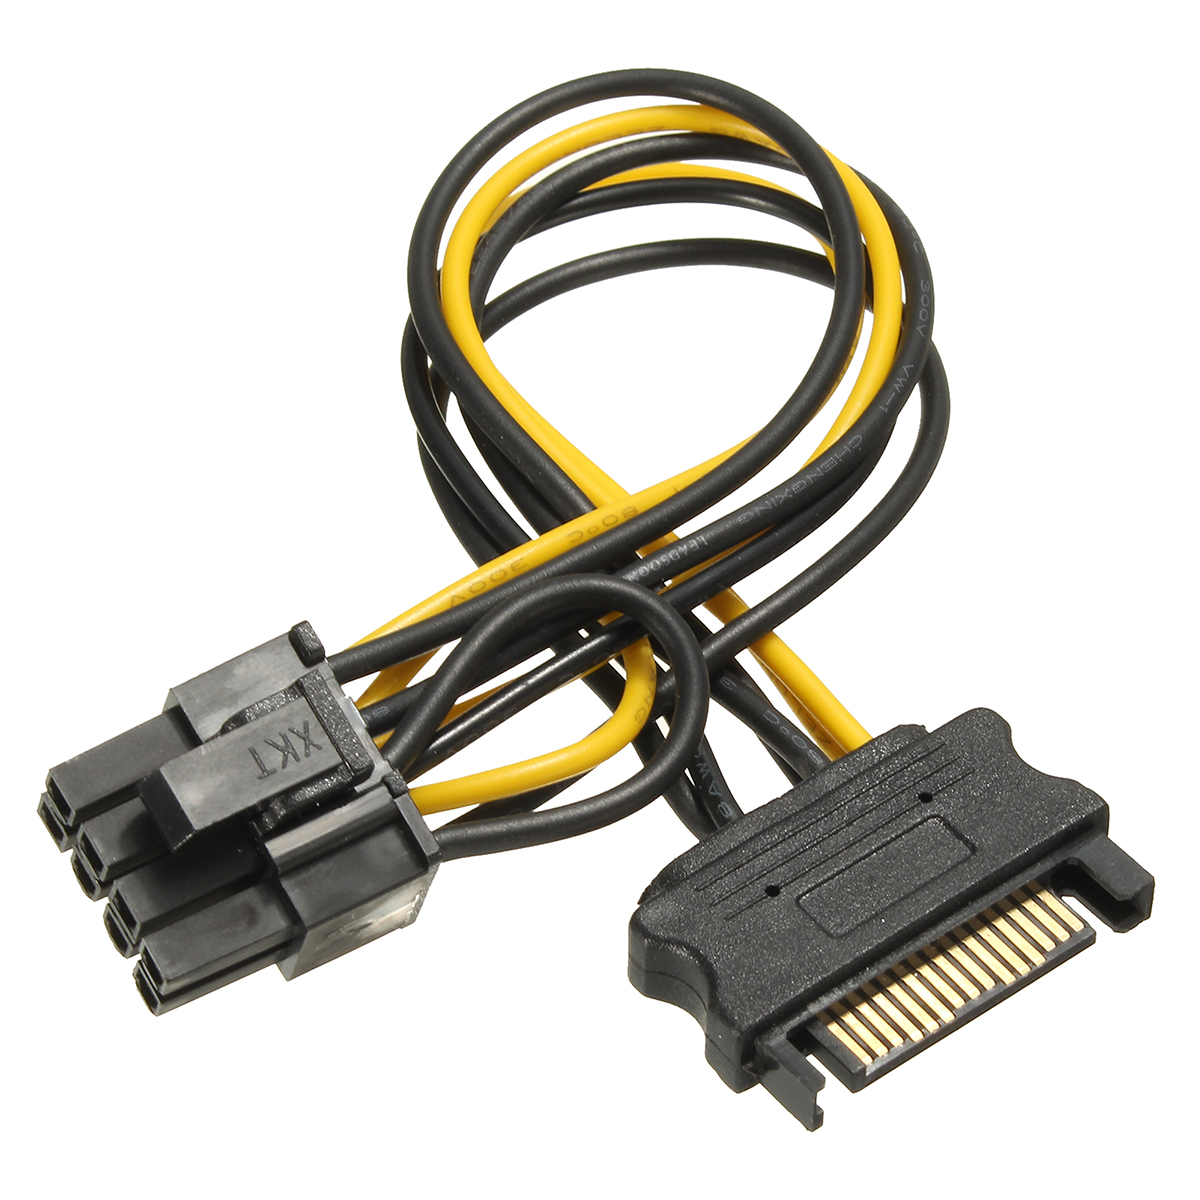 

SATA 15 Штырьки для 8-контактного PCI-E Разъем Адаптер питания